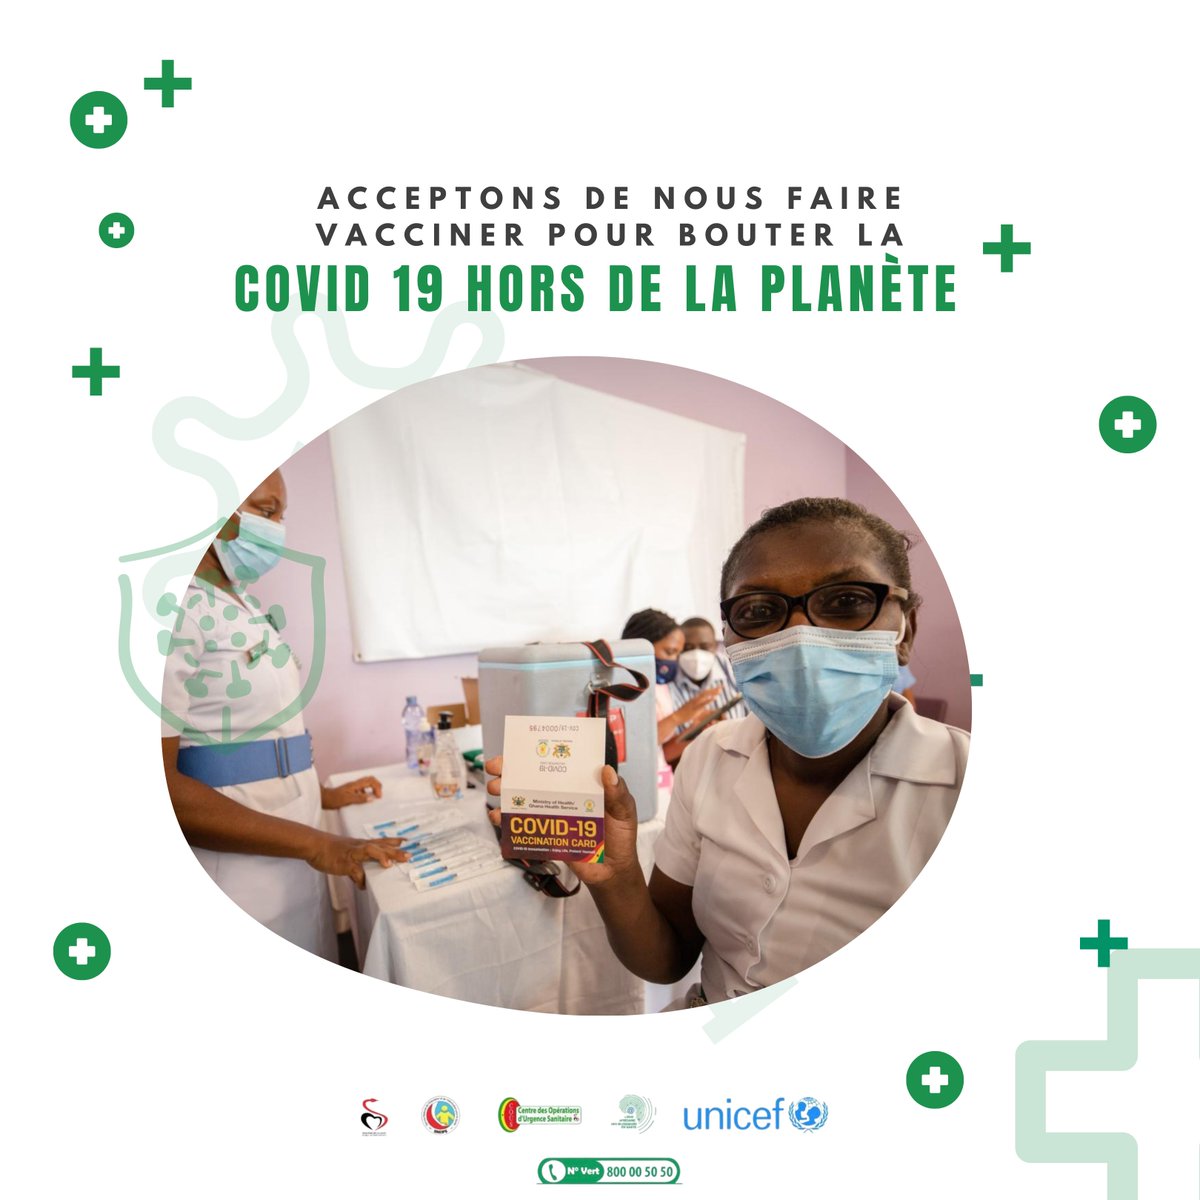 Acceptons de nous faire vacciner pour bouter la COVID 19 hors de la planète. #labsante #dogalicovid19